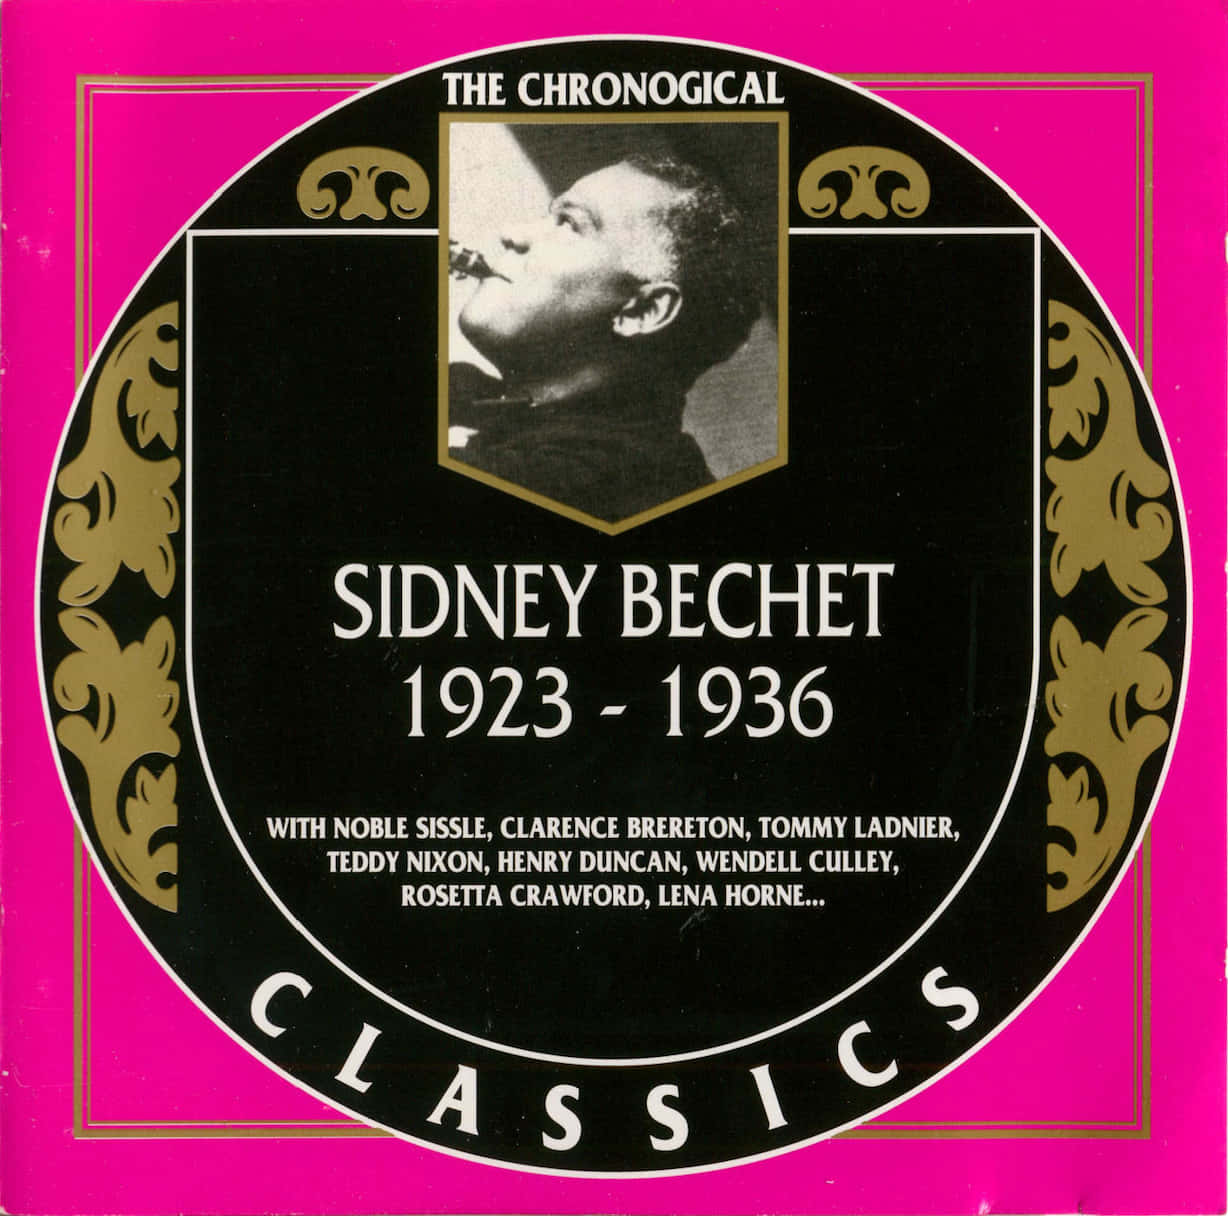 Sidneybrechet 1923-1936 Classics Vinyl Cover - Sidney Brechet 1923-1936 Klassiker Vinylomslag. Wallpaper